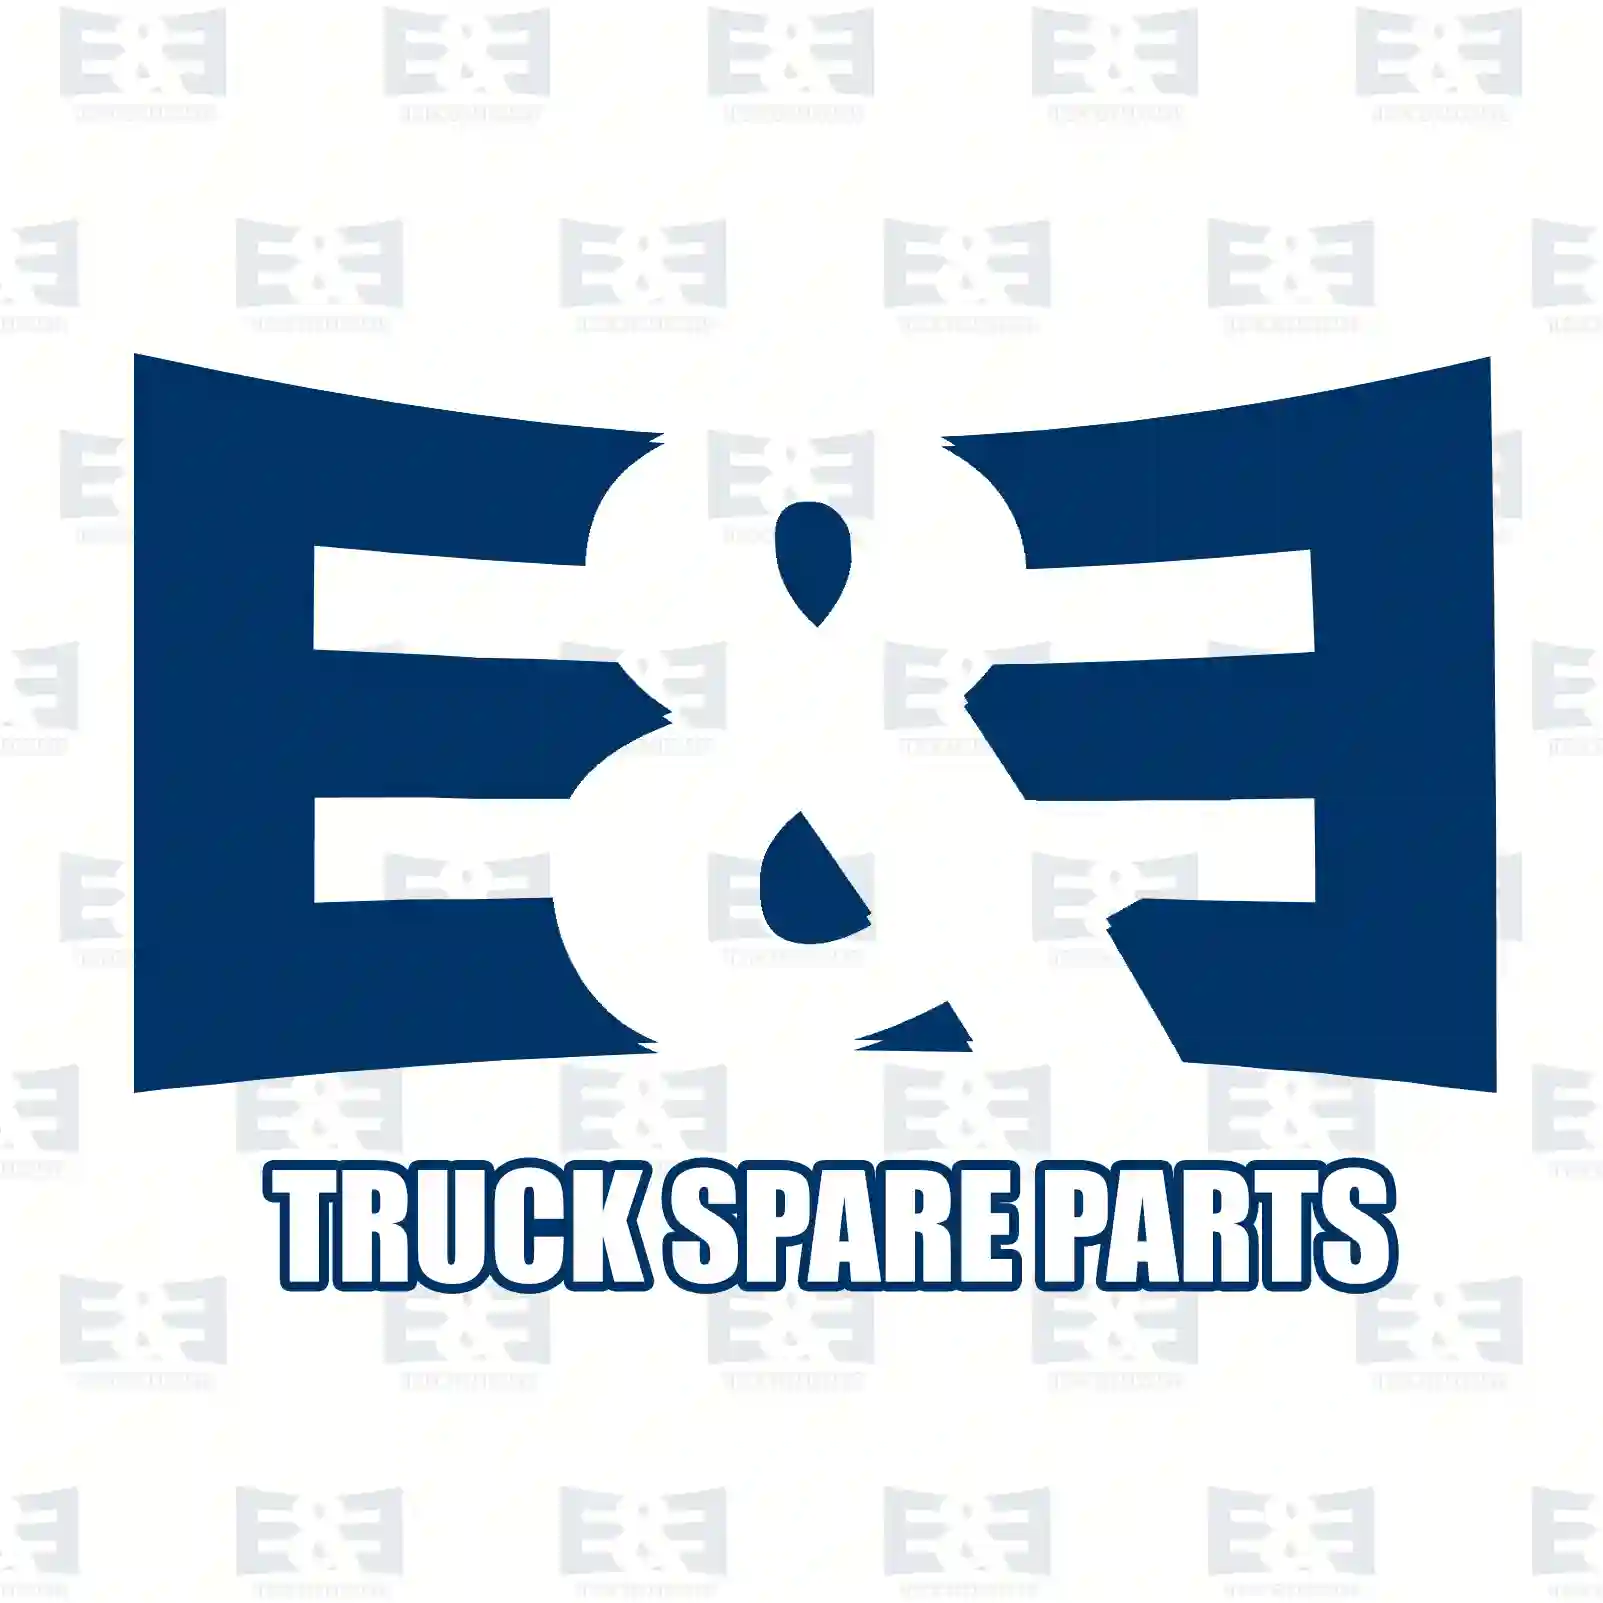 Bracket, 2E2292065, 21236795, 2224789 ||  2E2292065 E&E Truck Spare Parts | Truck Spare Parts, Auotomotive Spare Parts Bracket, 2E2292065, 21236795, 2224789 ||  2E2292065 E&E Truck Spare Parts | Truck Spare Parts, Auotomotive Spare Parts